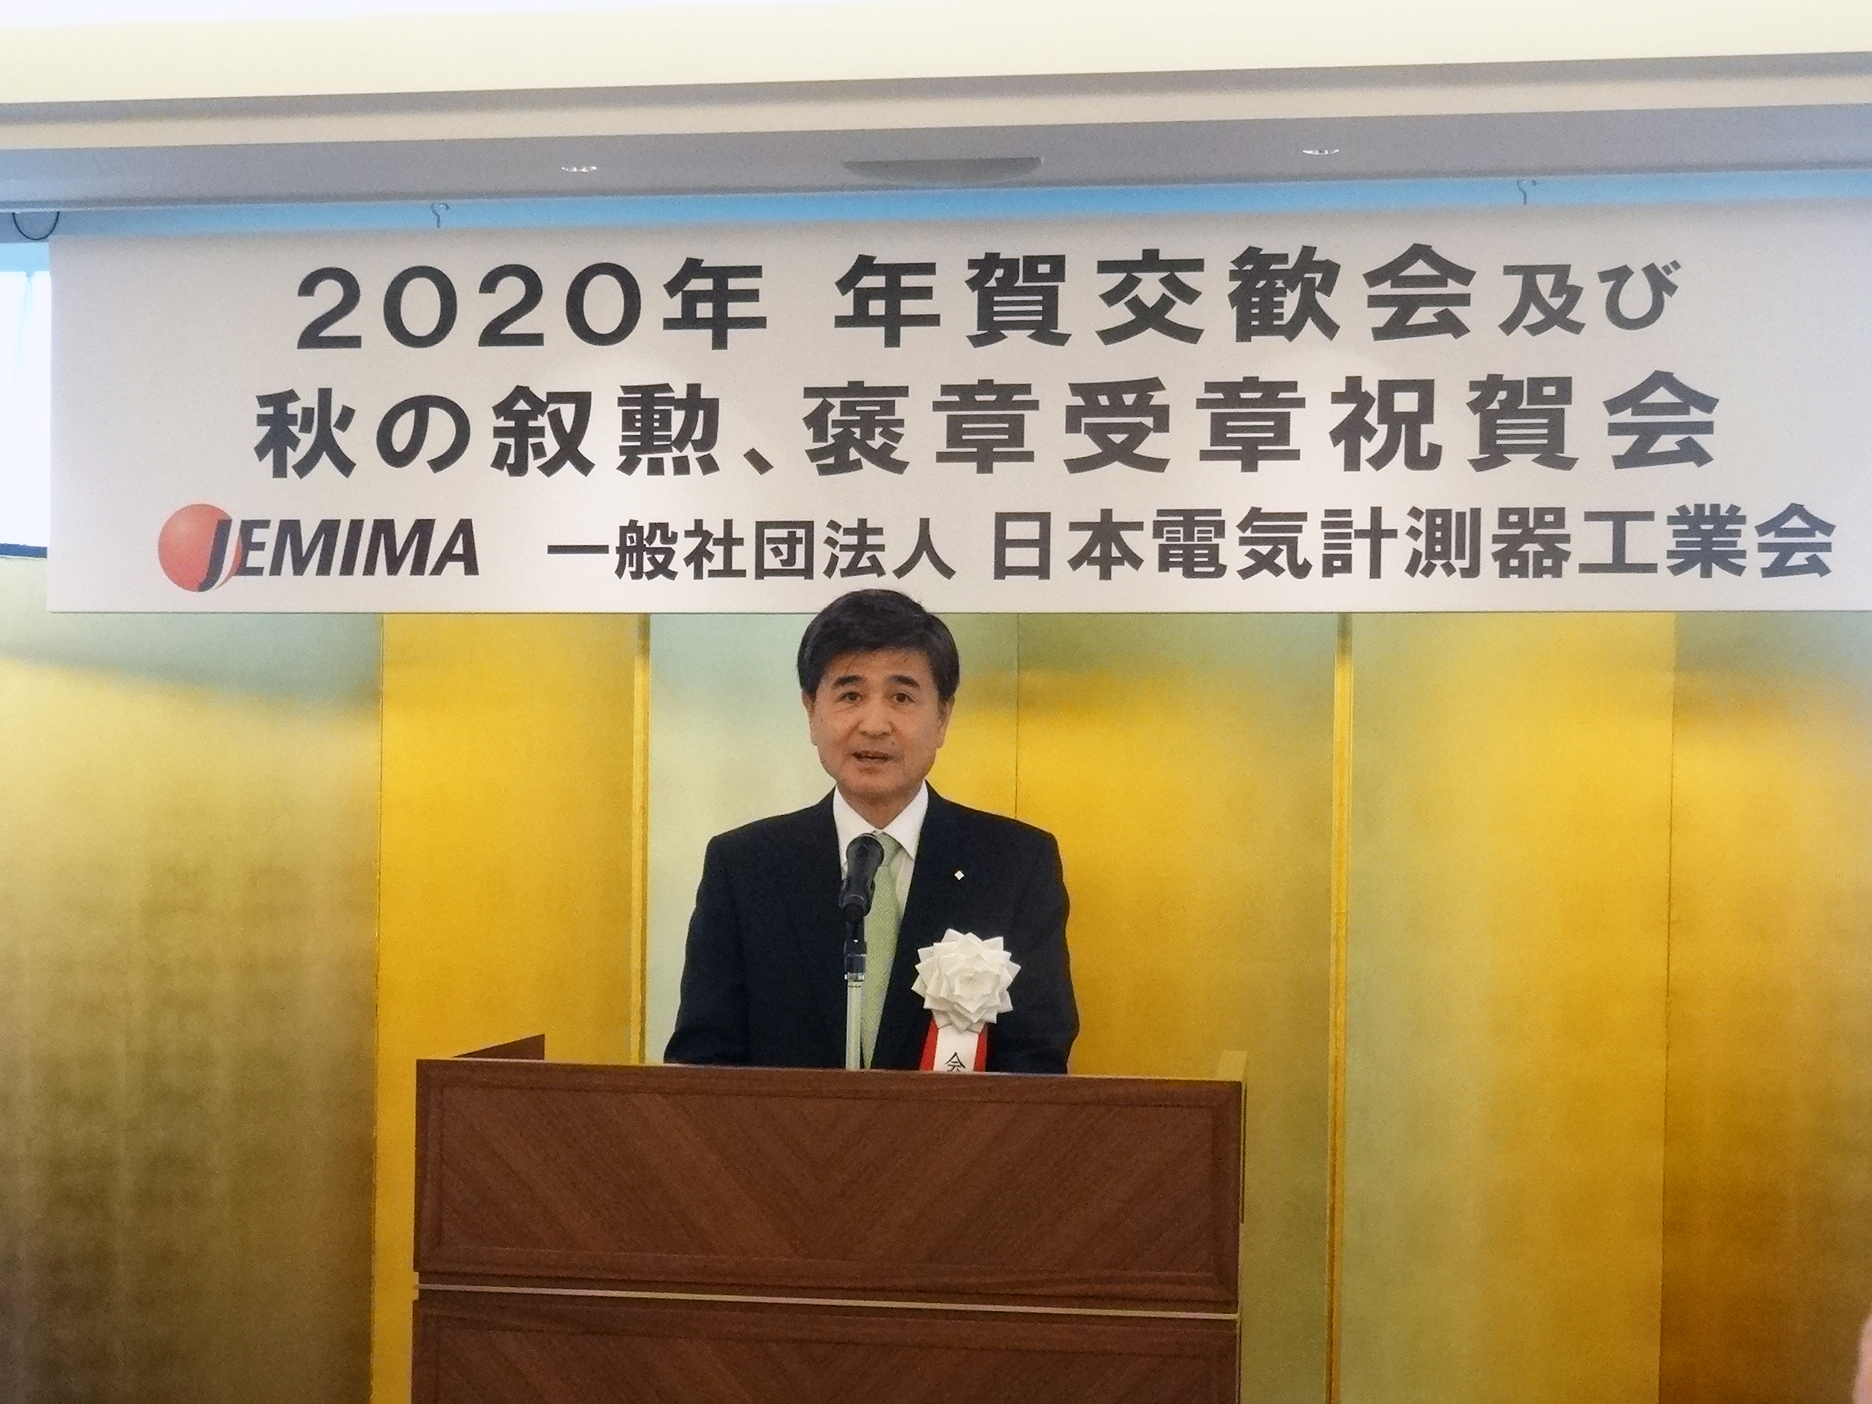 【2020年賀詞交歓会】JEMIMA、東京五輪の効果で景気上向きに期待